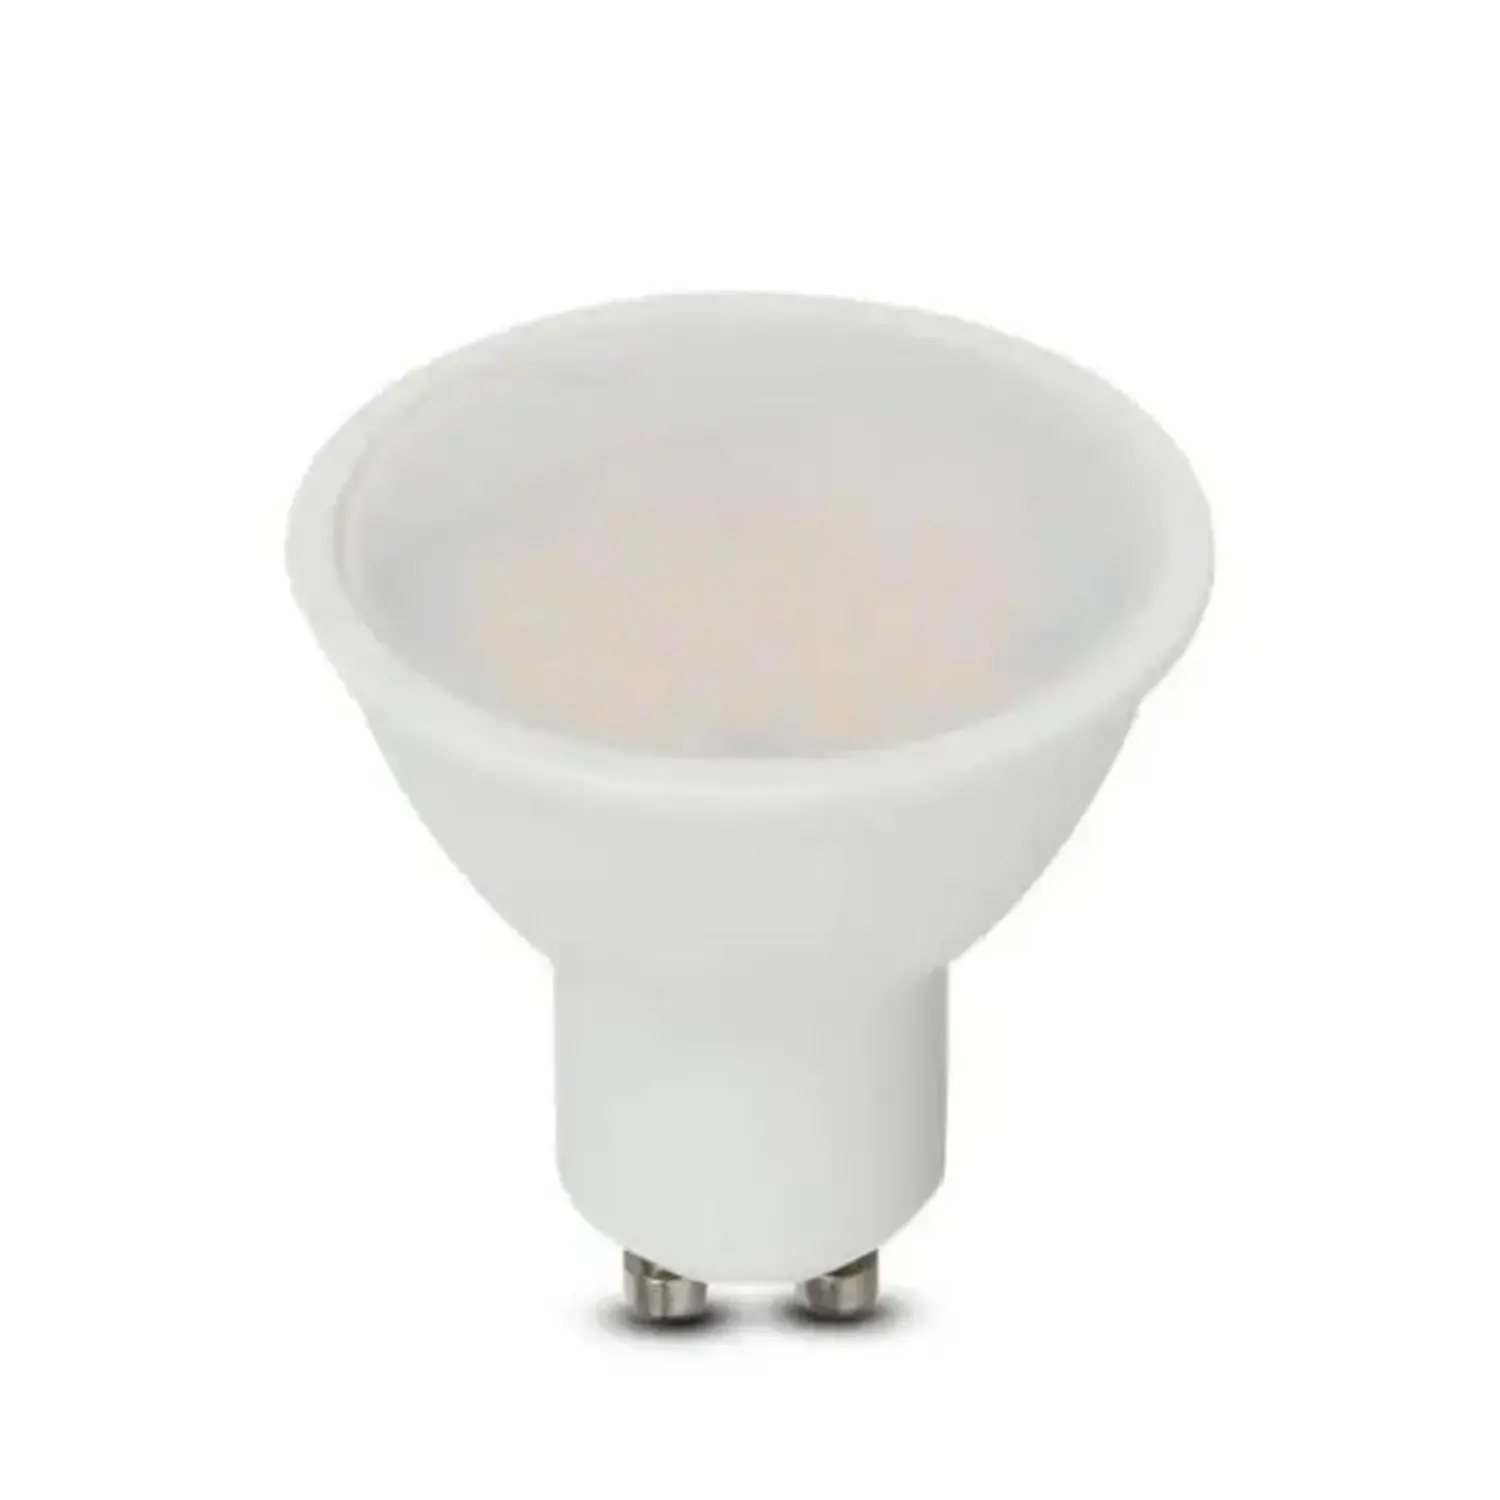 immagine del prodotto lampadina led chip samsung lampada faretto 10 watt bianco naturale